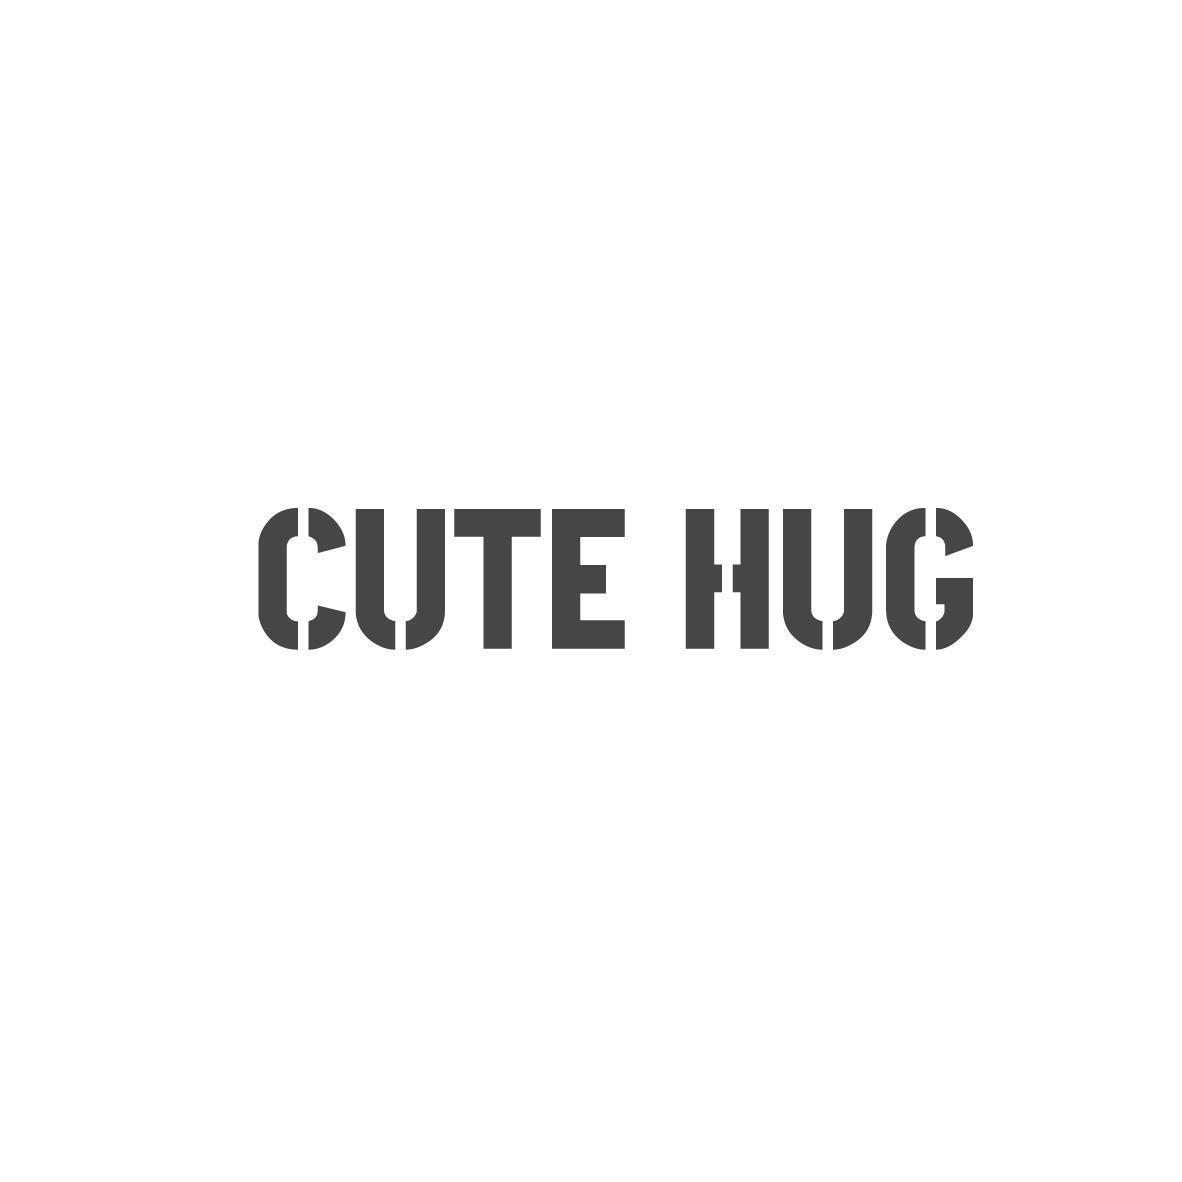 CUTE HUG